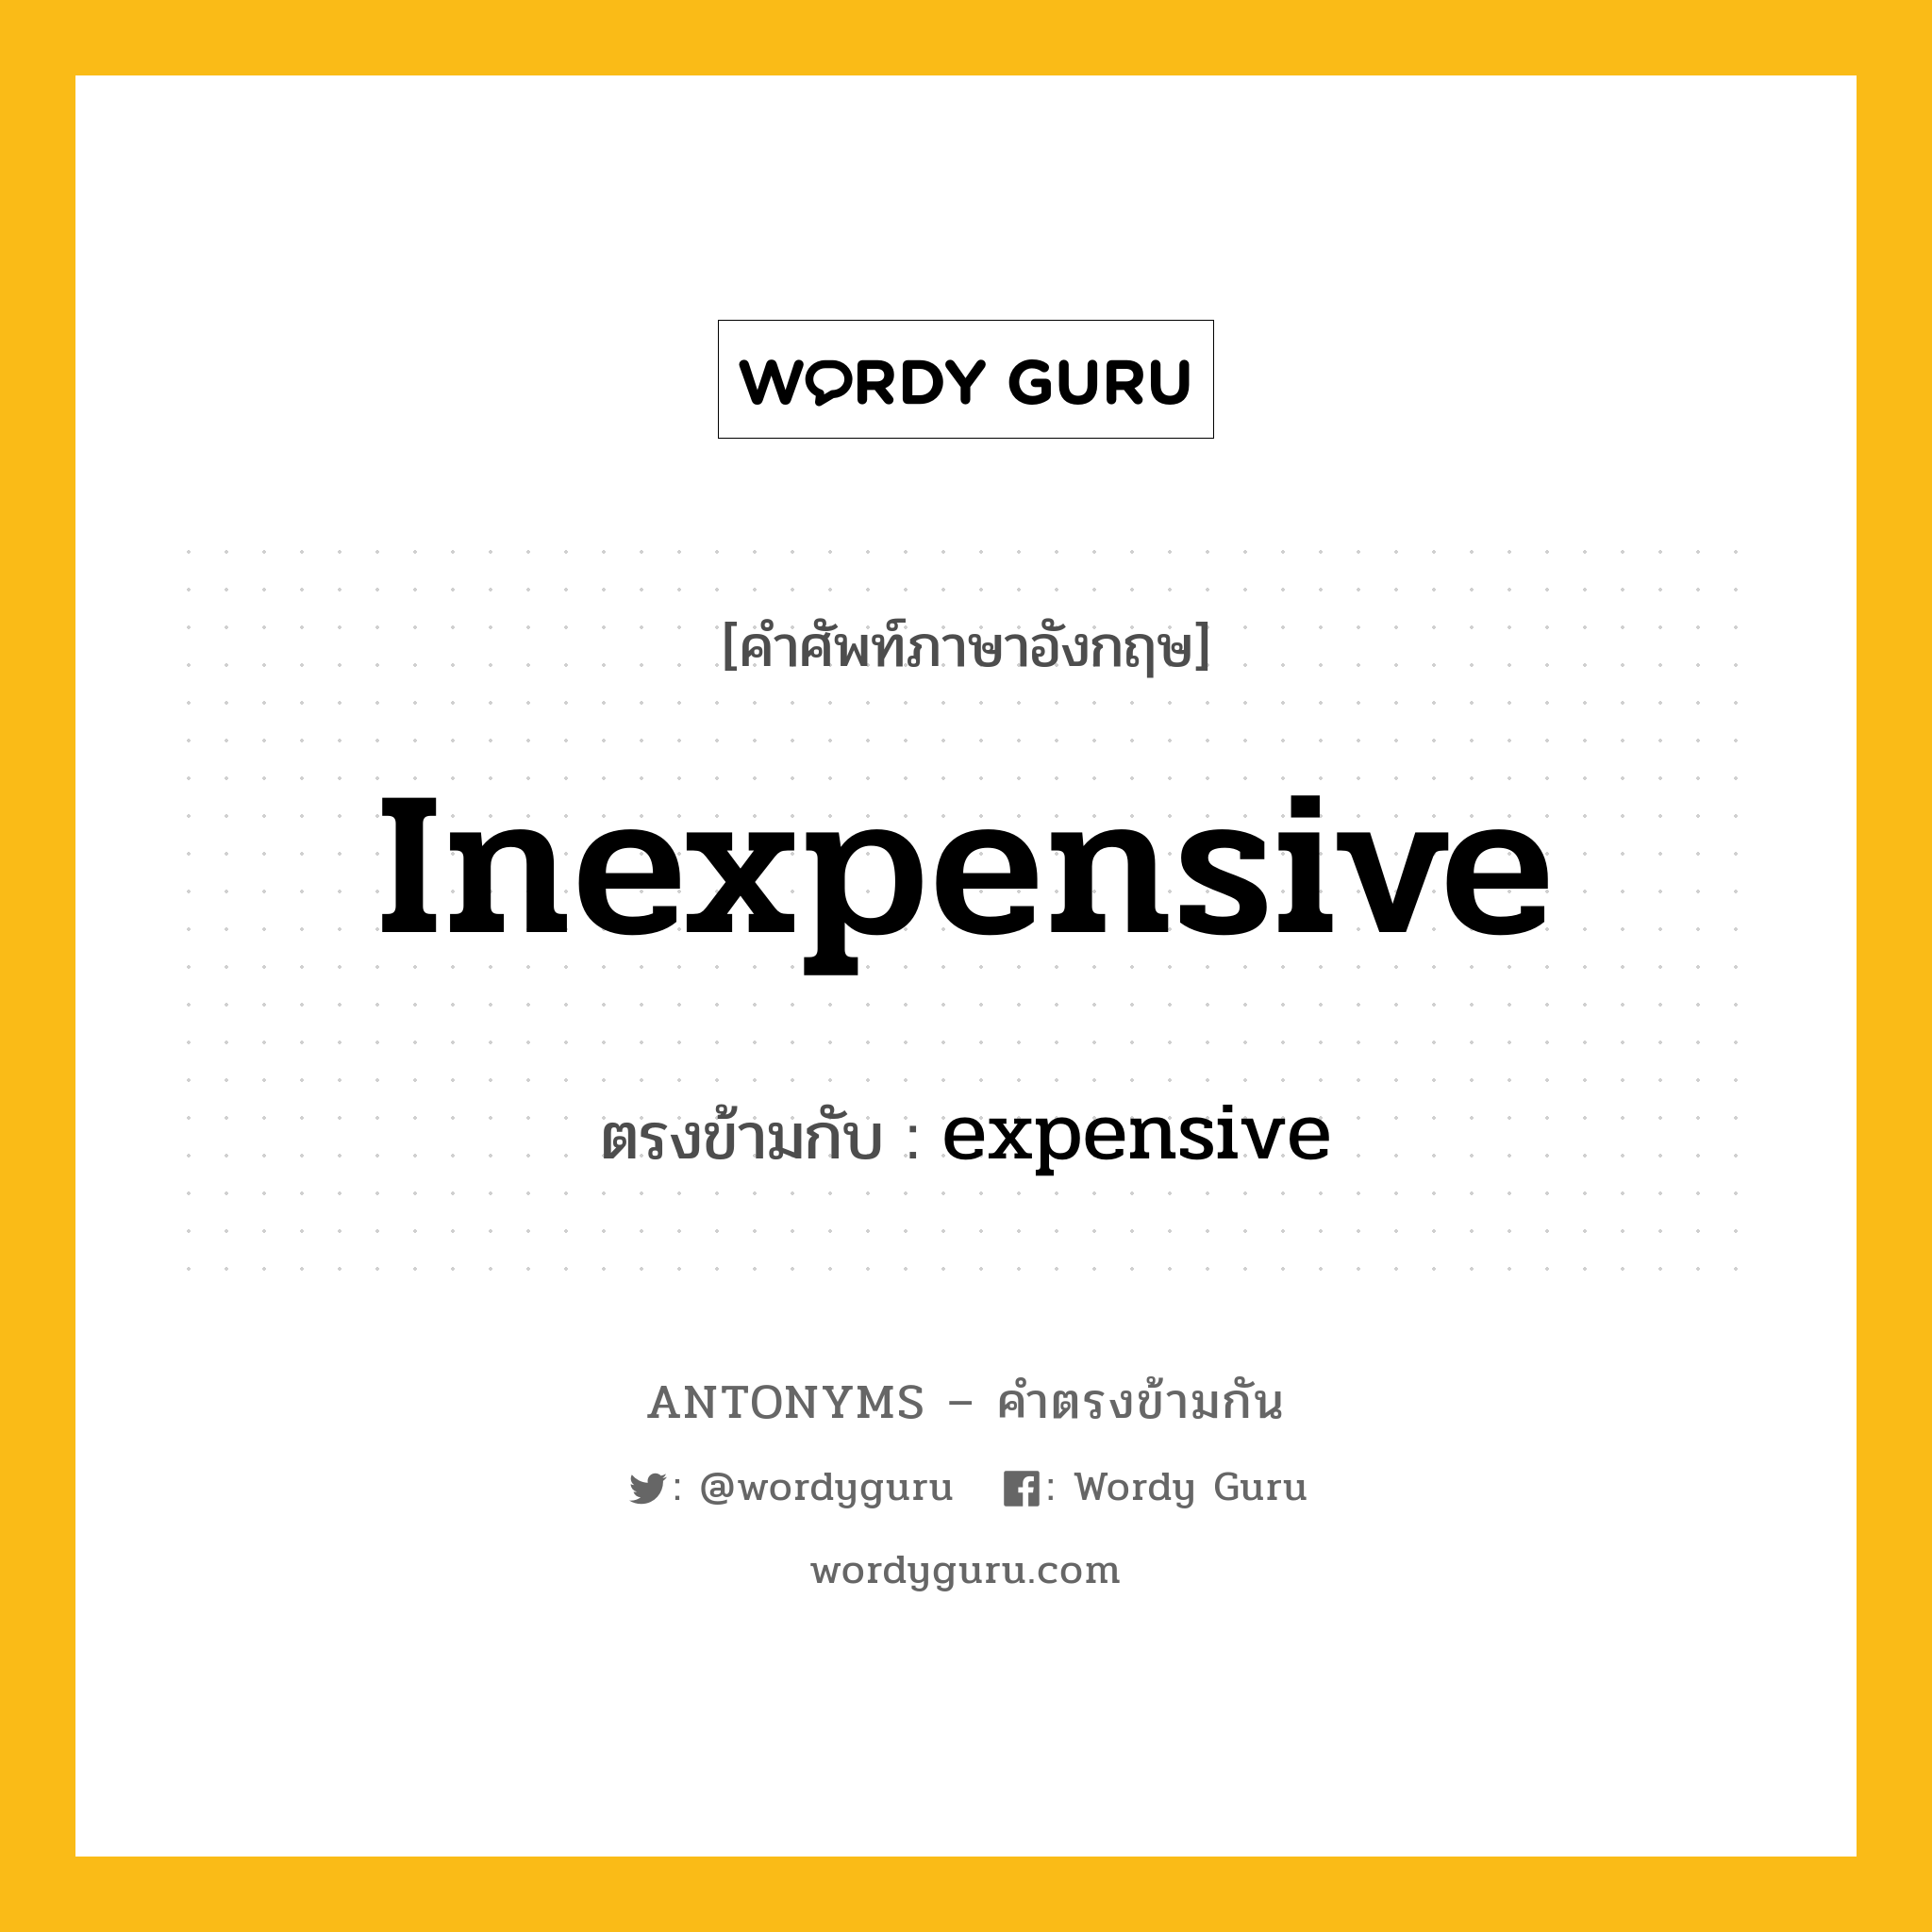 inexpensive เป็นคำตรงข้ามกับคำไหนบ้าง?, คำศัพท์ภาษาอังกฤษที่มีความหมายตรงข้ามกัน inexpensive ตรงข้ามกับ expensive หมวด expensive